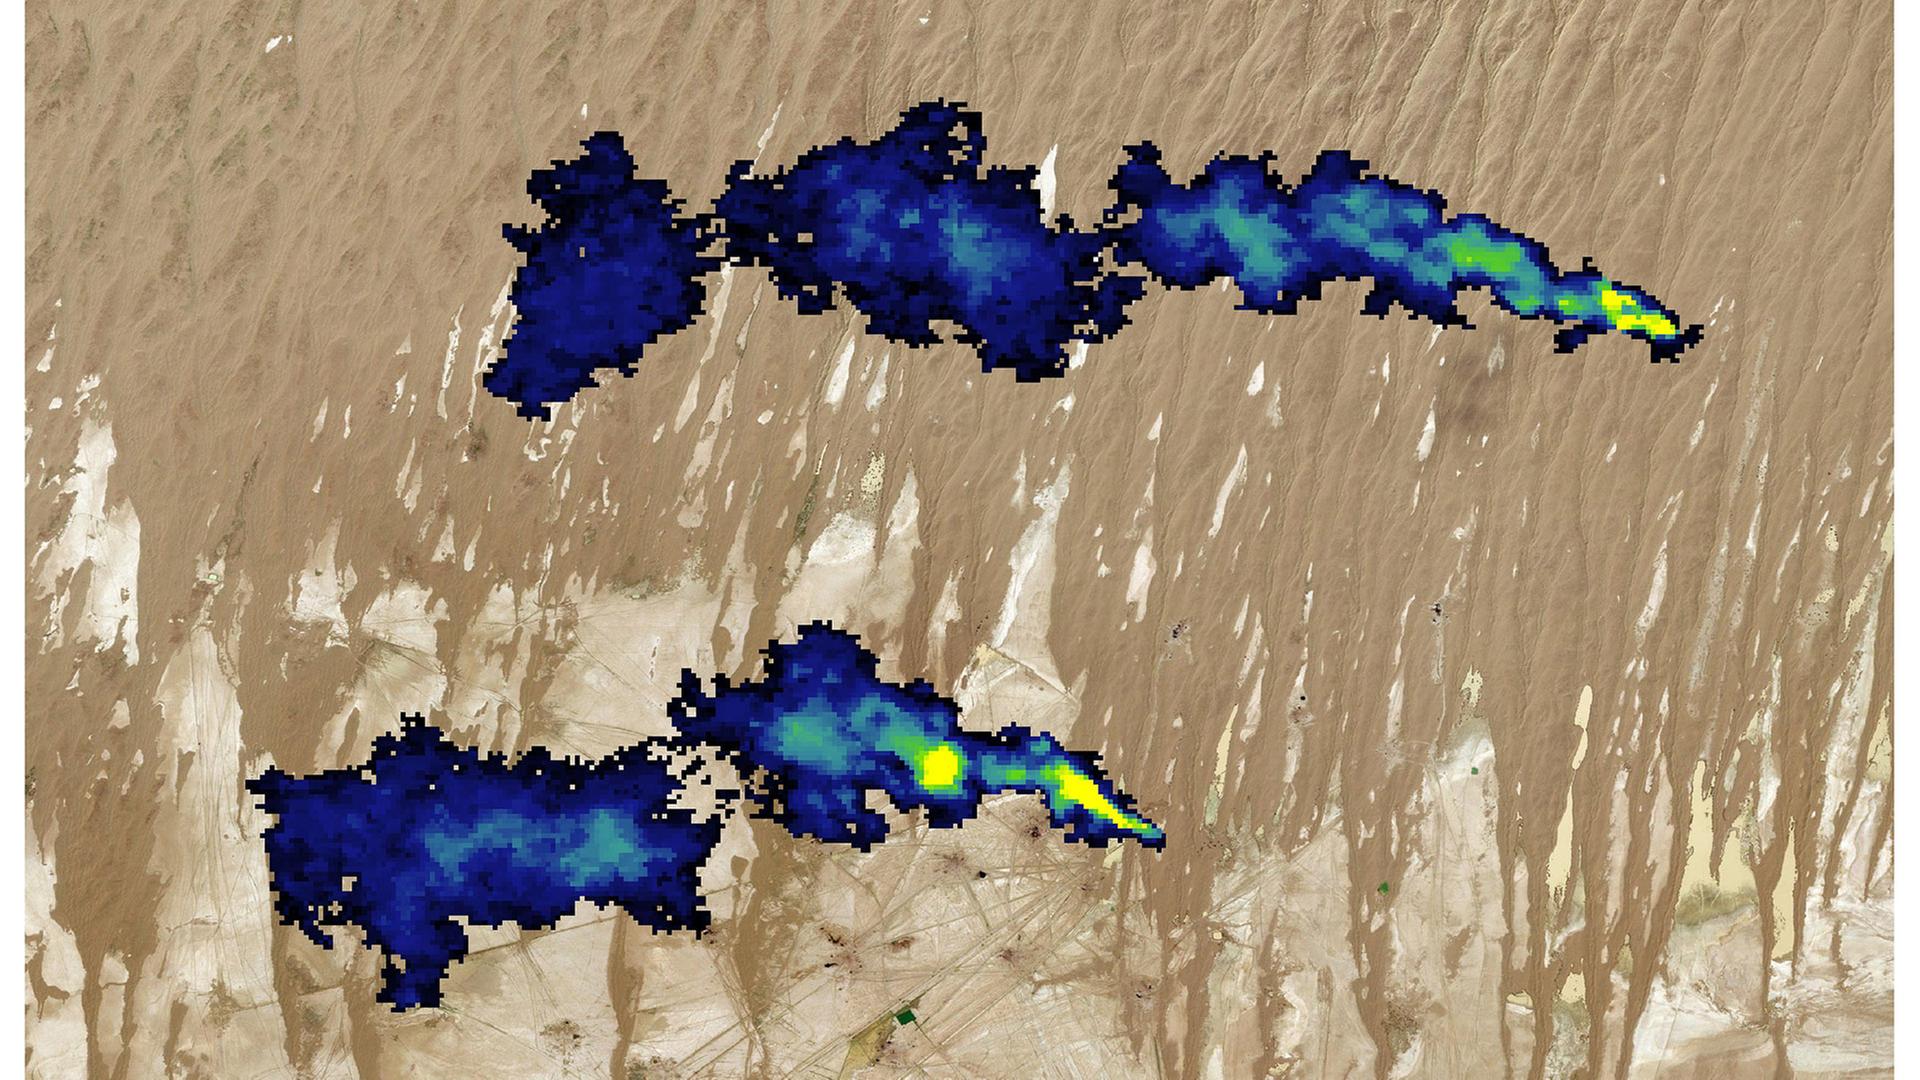 Satellitenbild mit blauer Wolke, die die Methanemission darstellt.